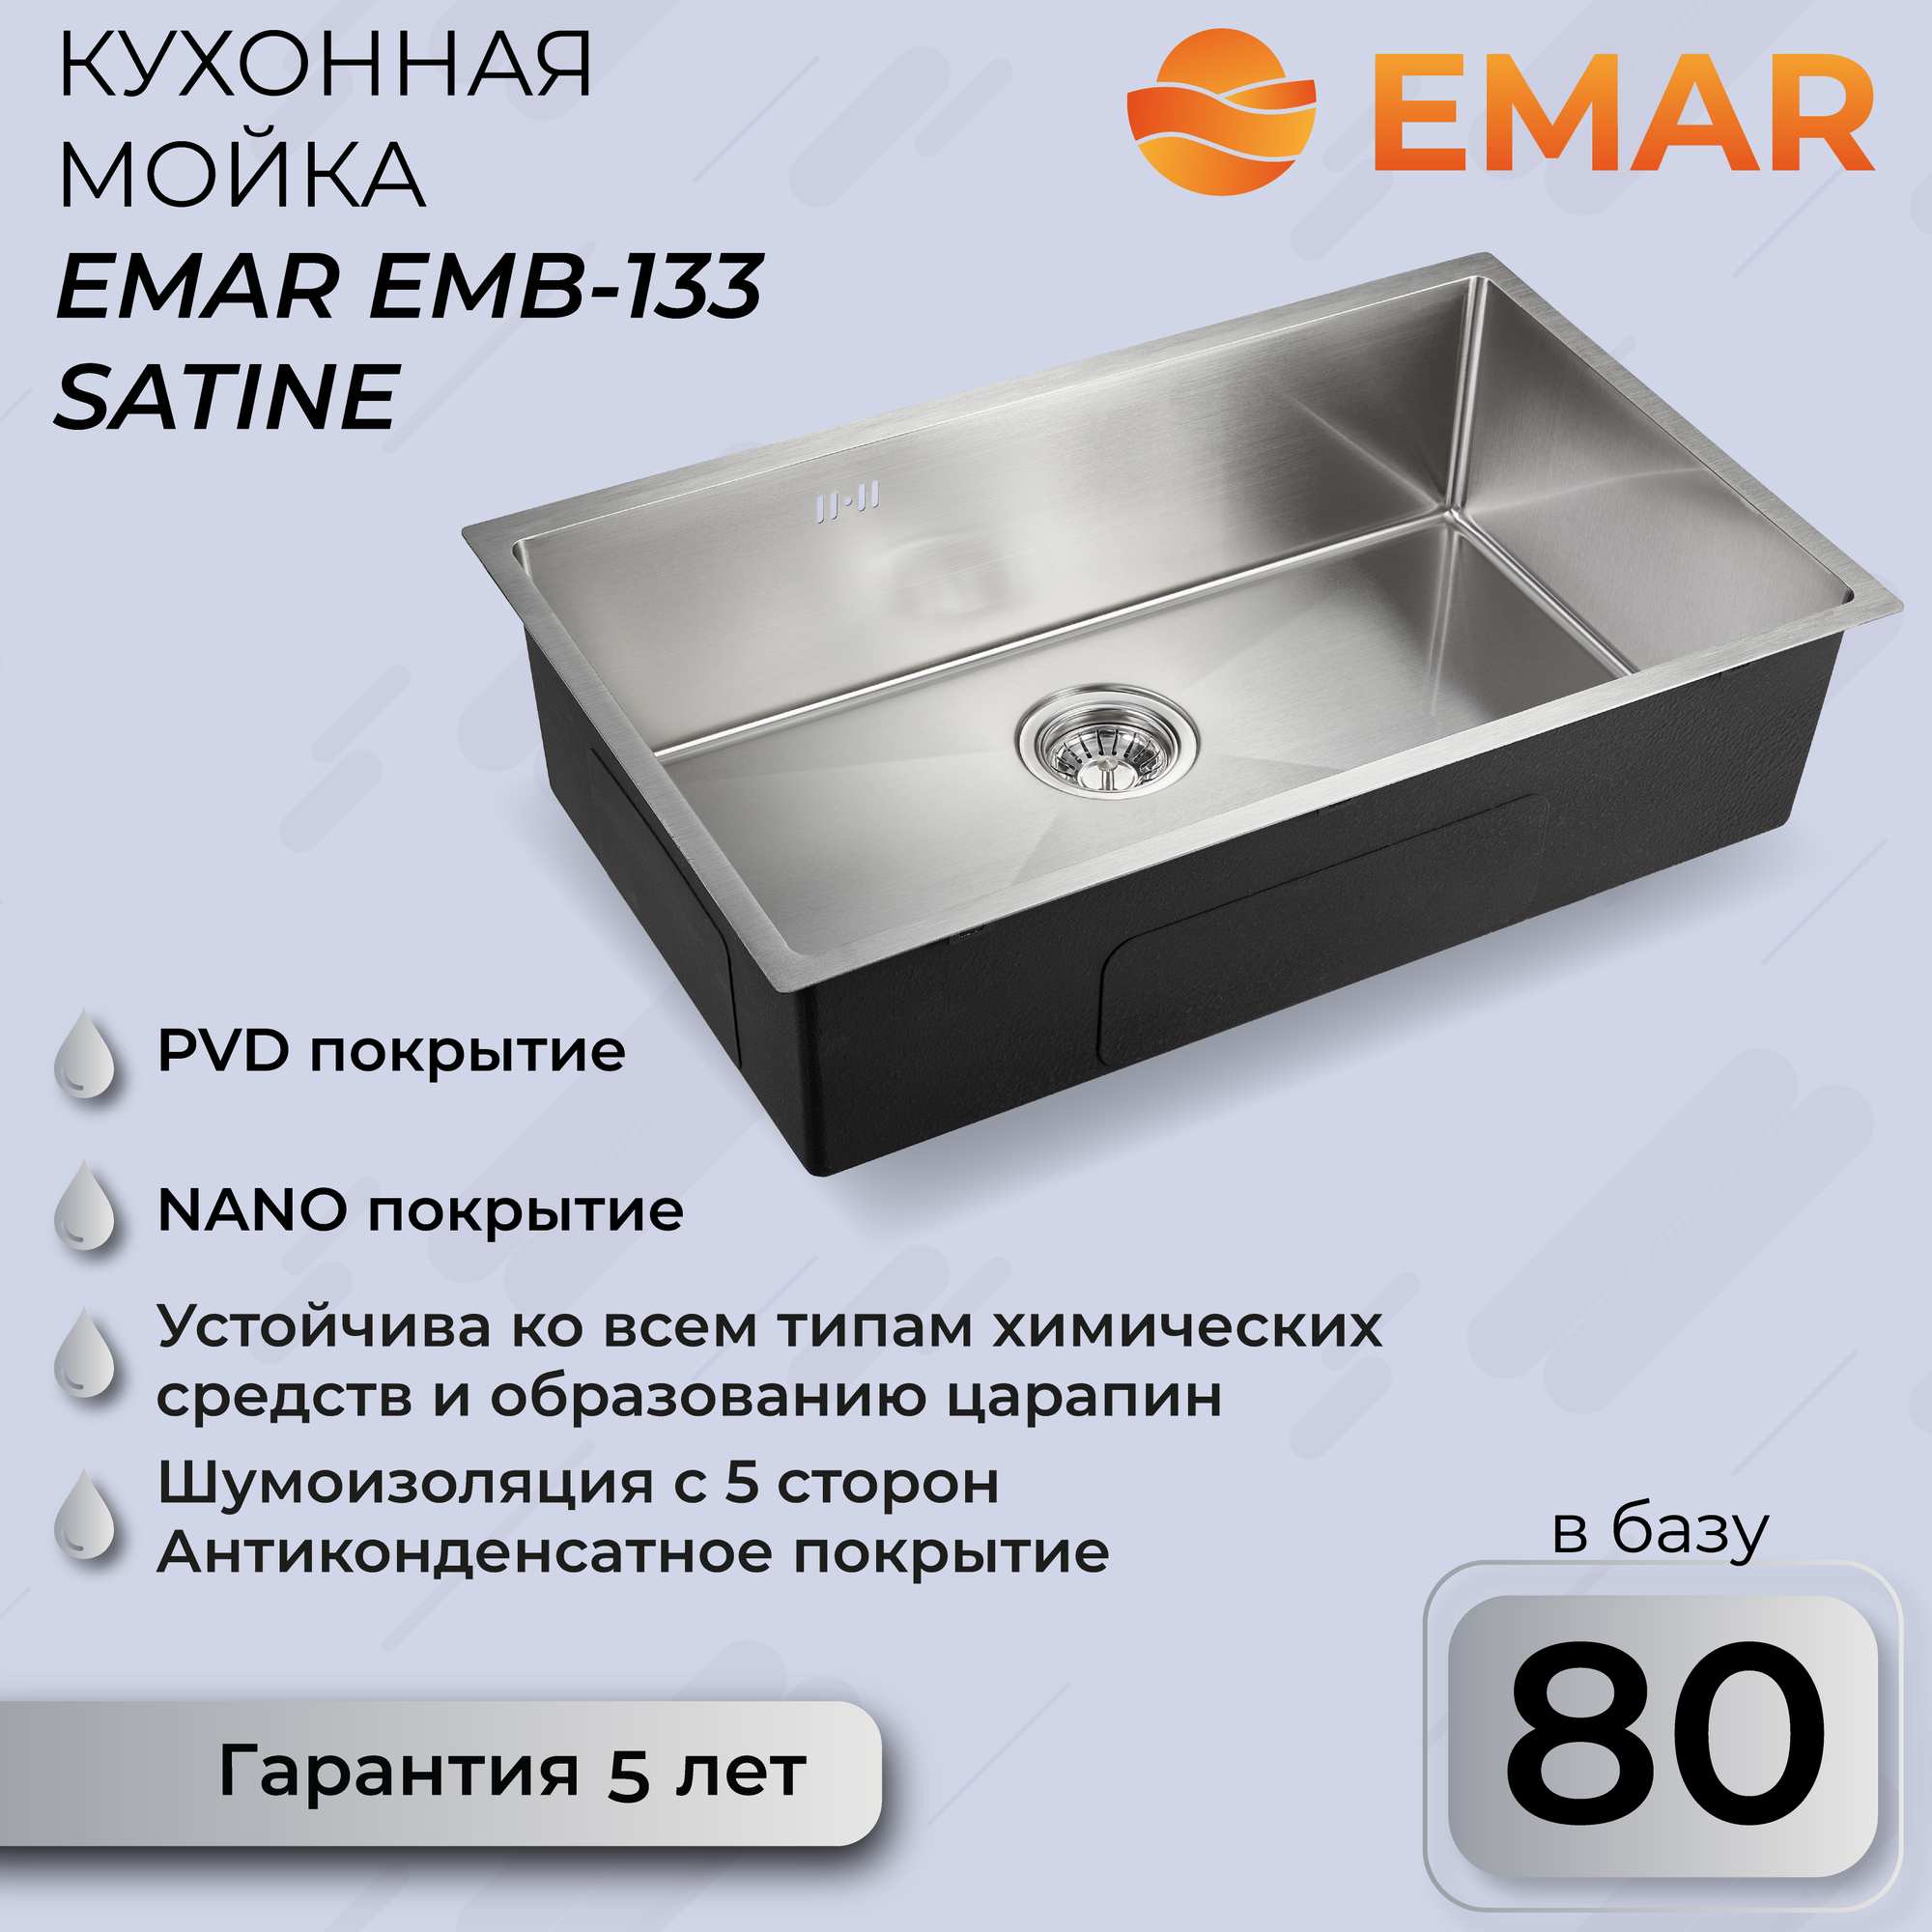 EMAR EMB-133 EMB-133 PVD Nano Satine